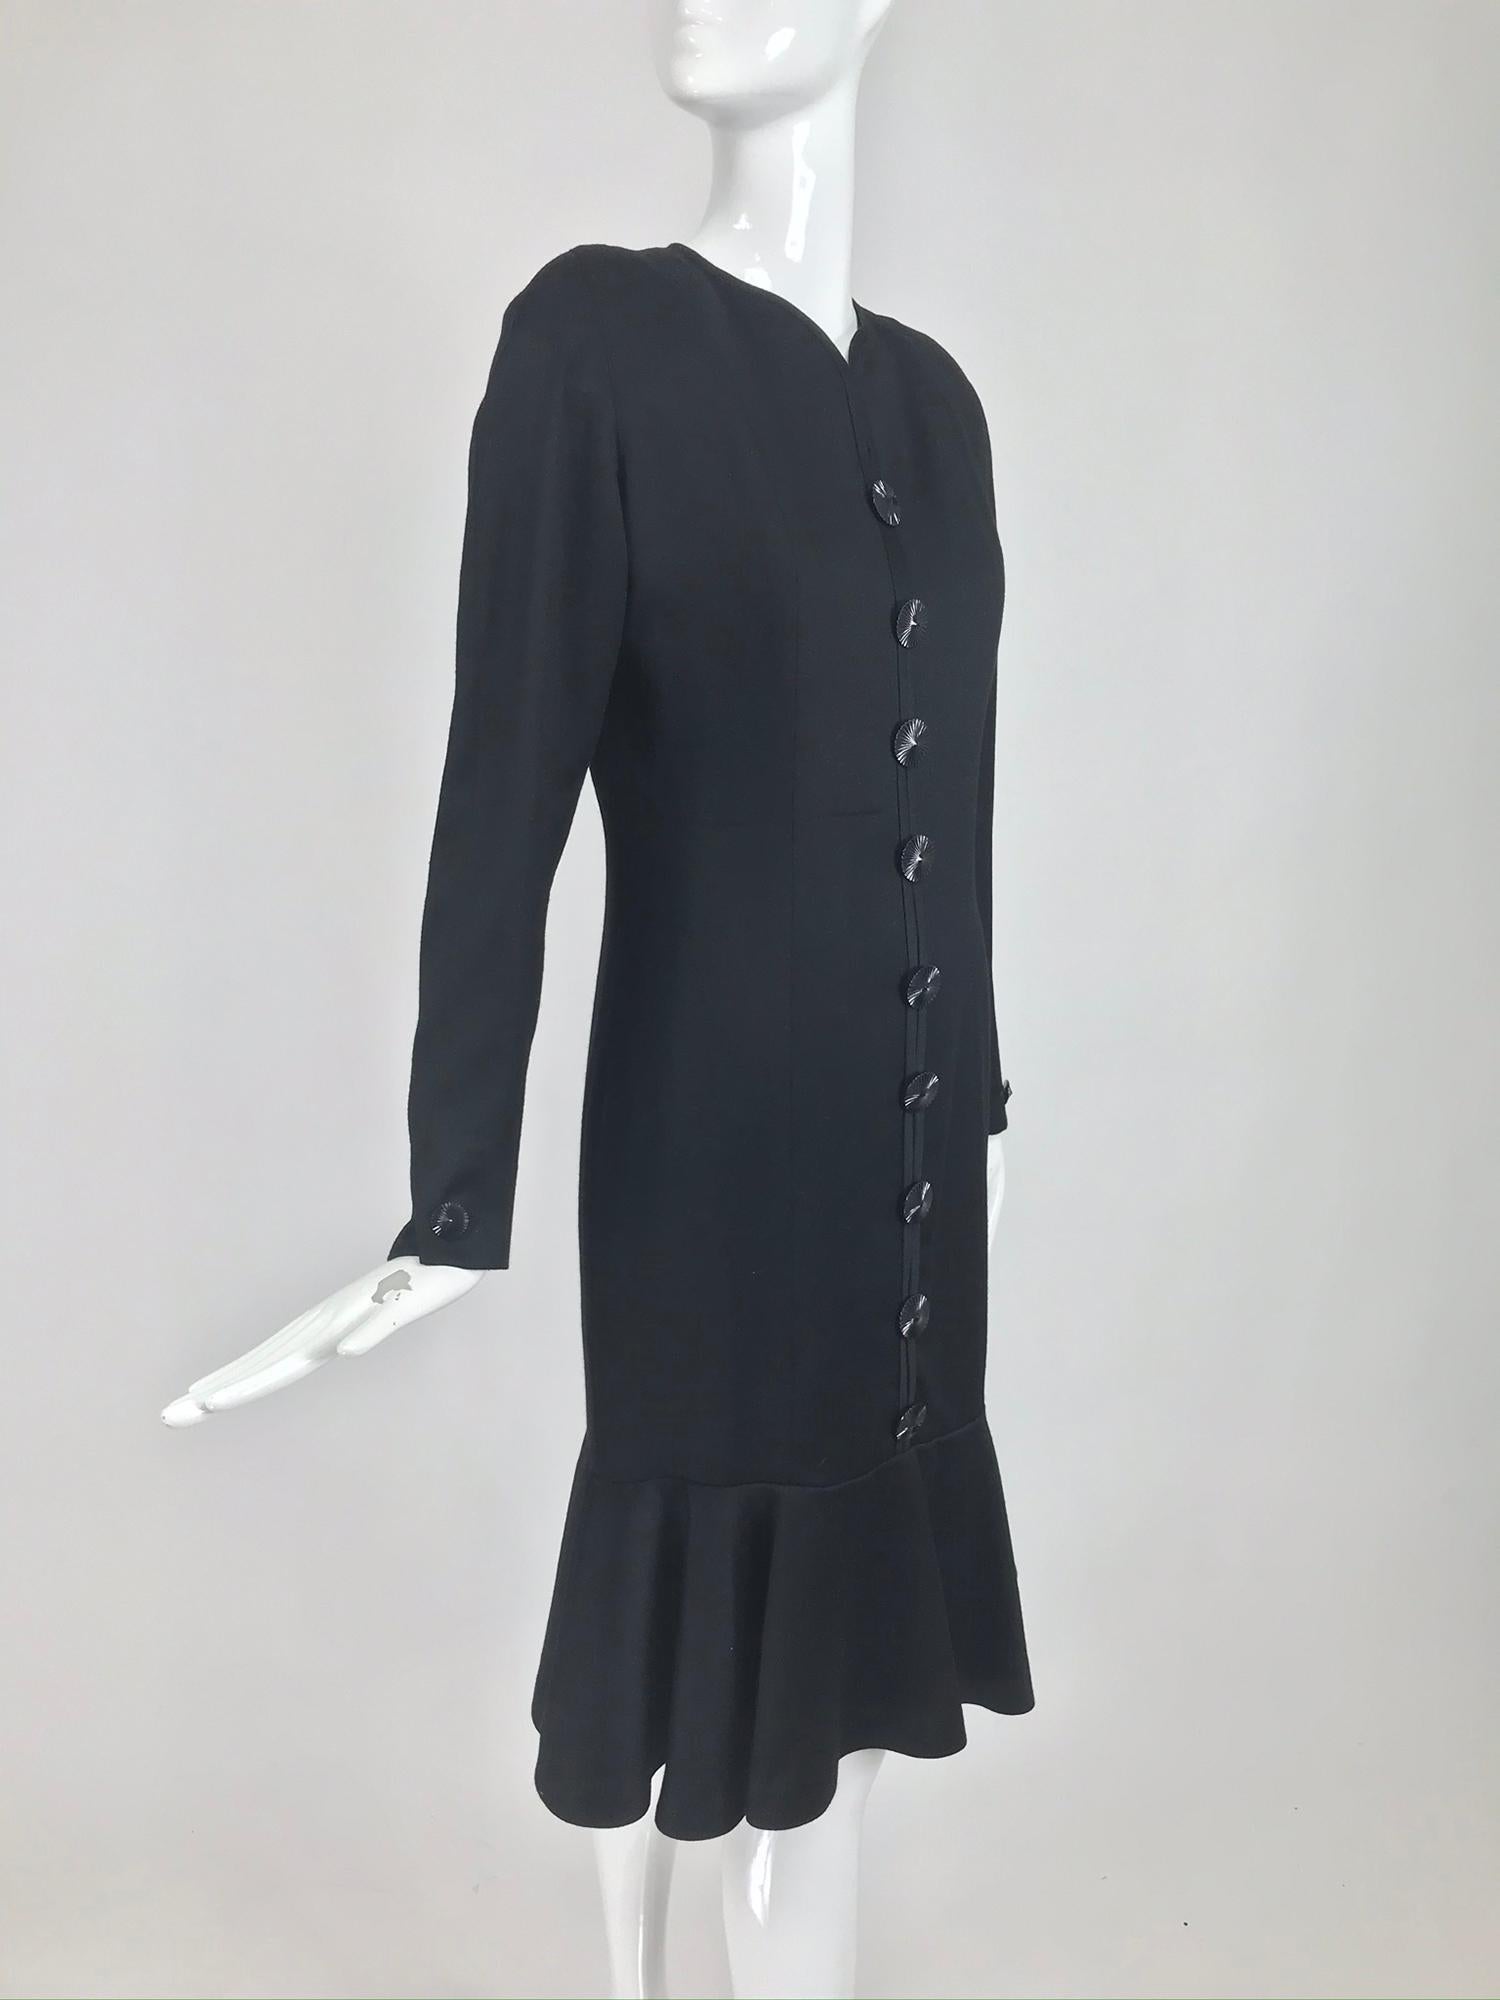 Women's Nina Ricci Black Wool Semi Fitted Dress with Flared Hem 1980s 